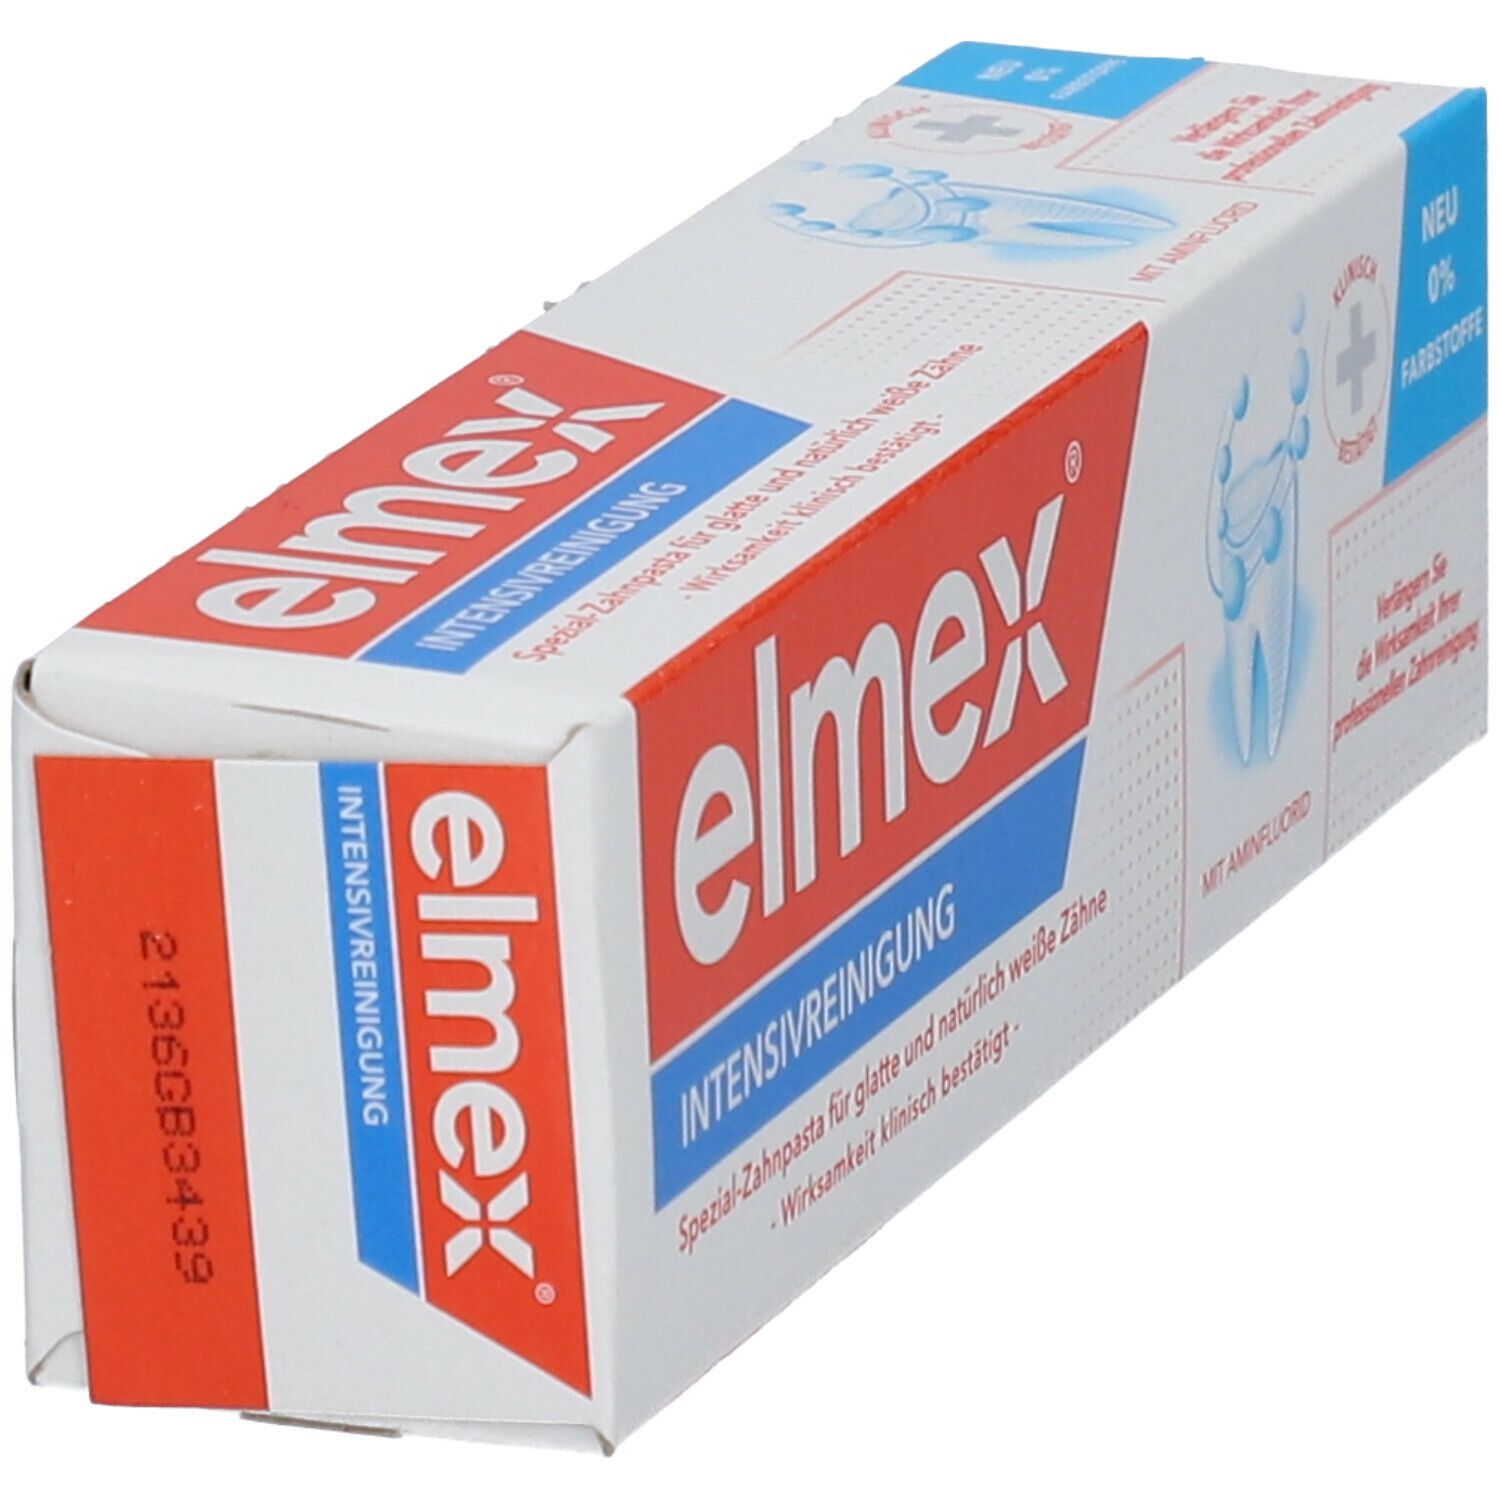 elmex Intensivreinigung Spezialzahnpasta